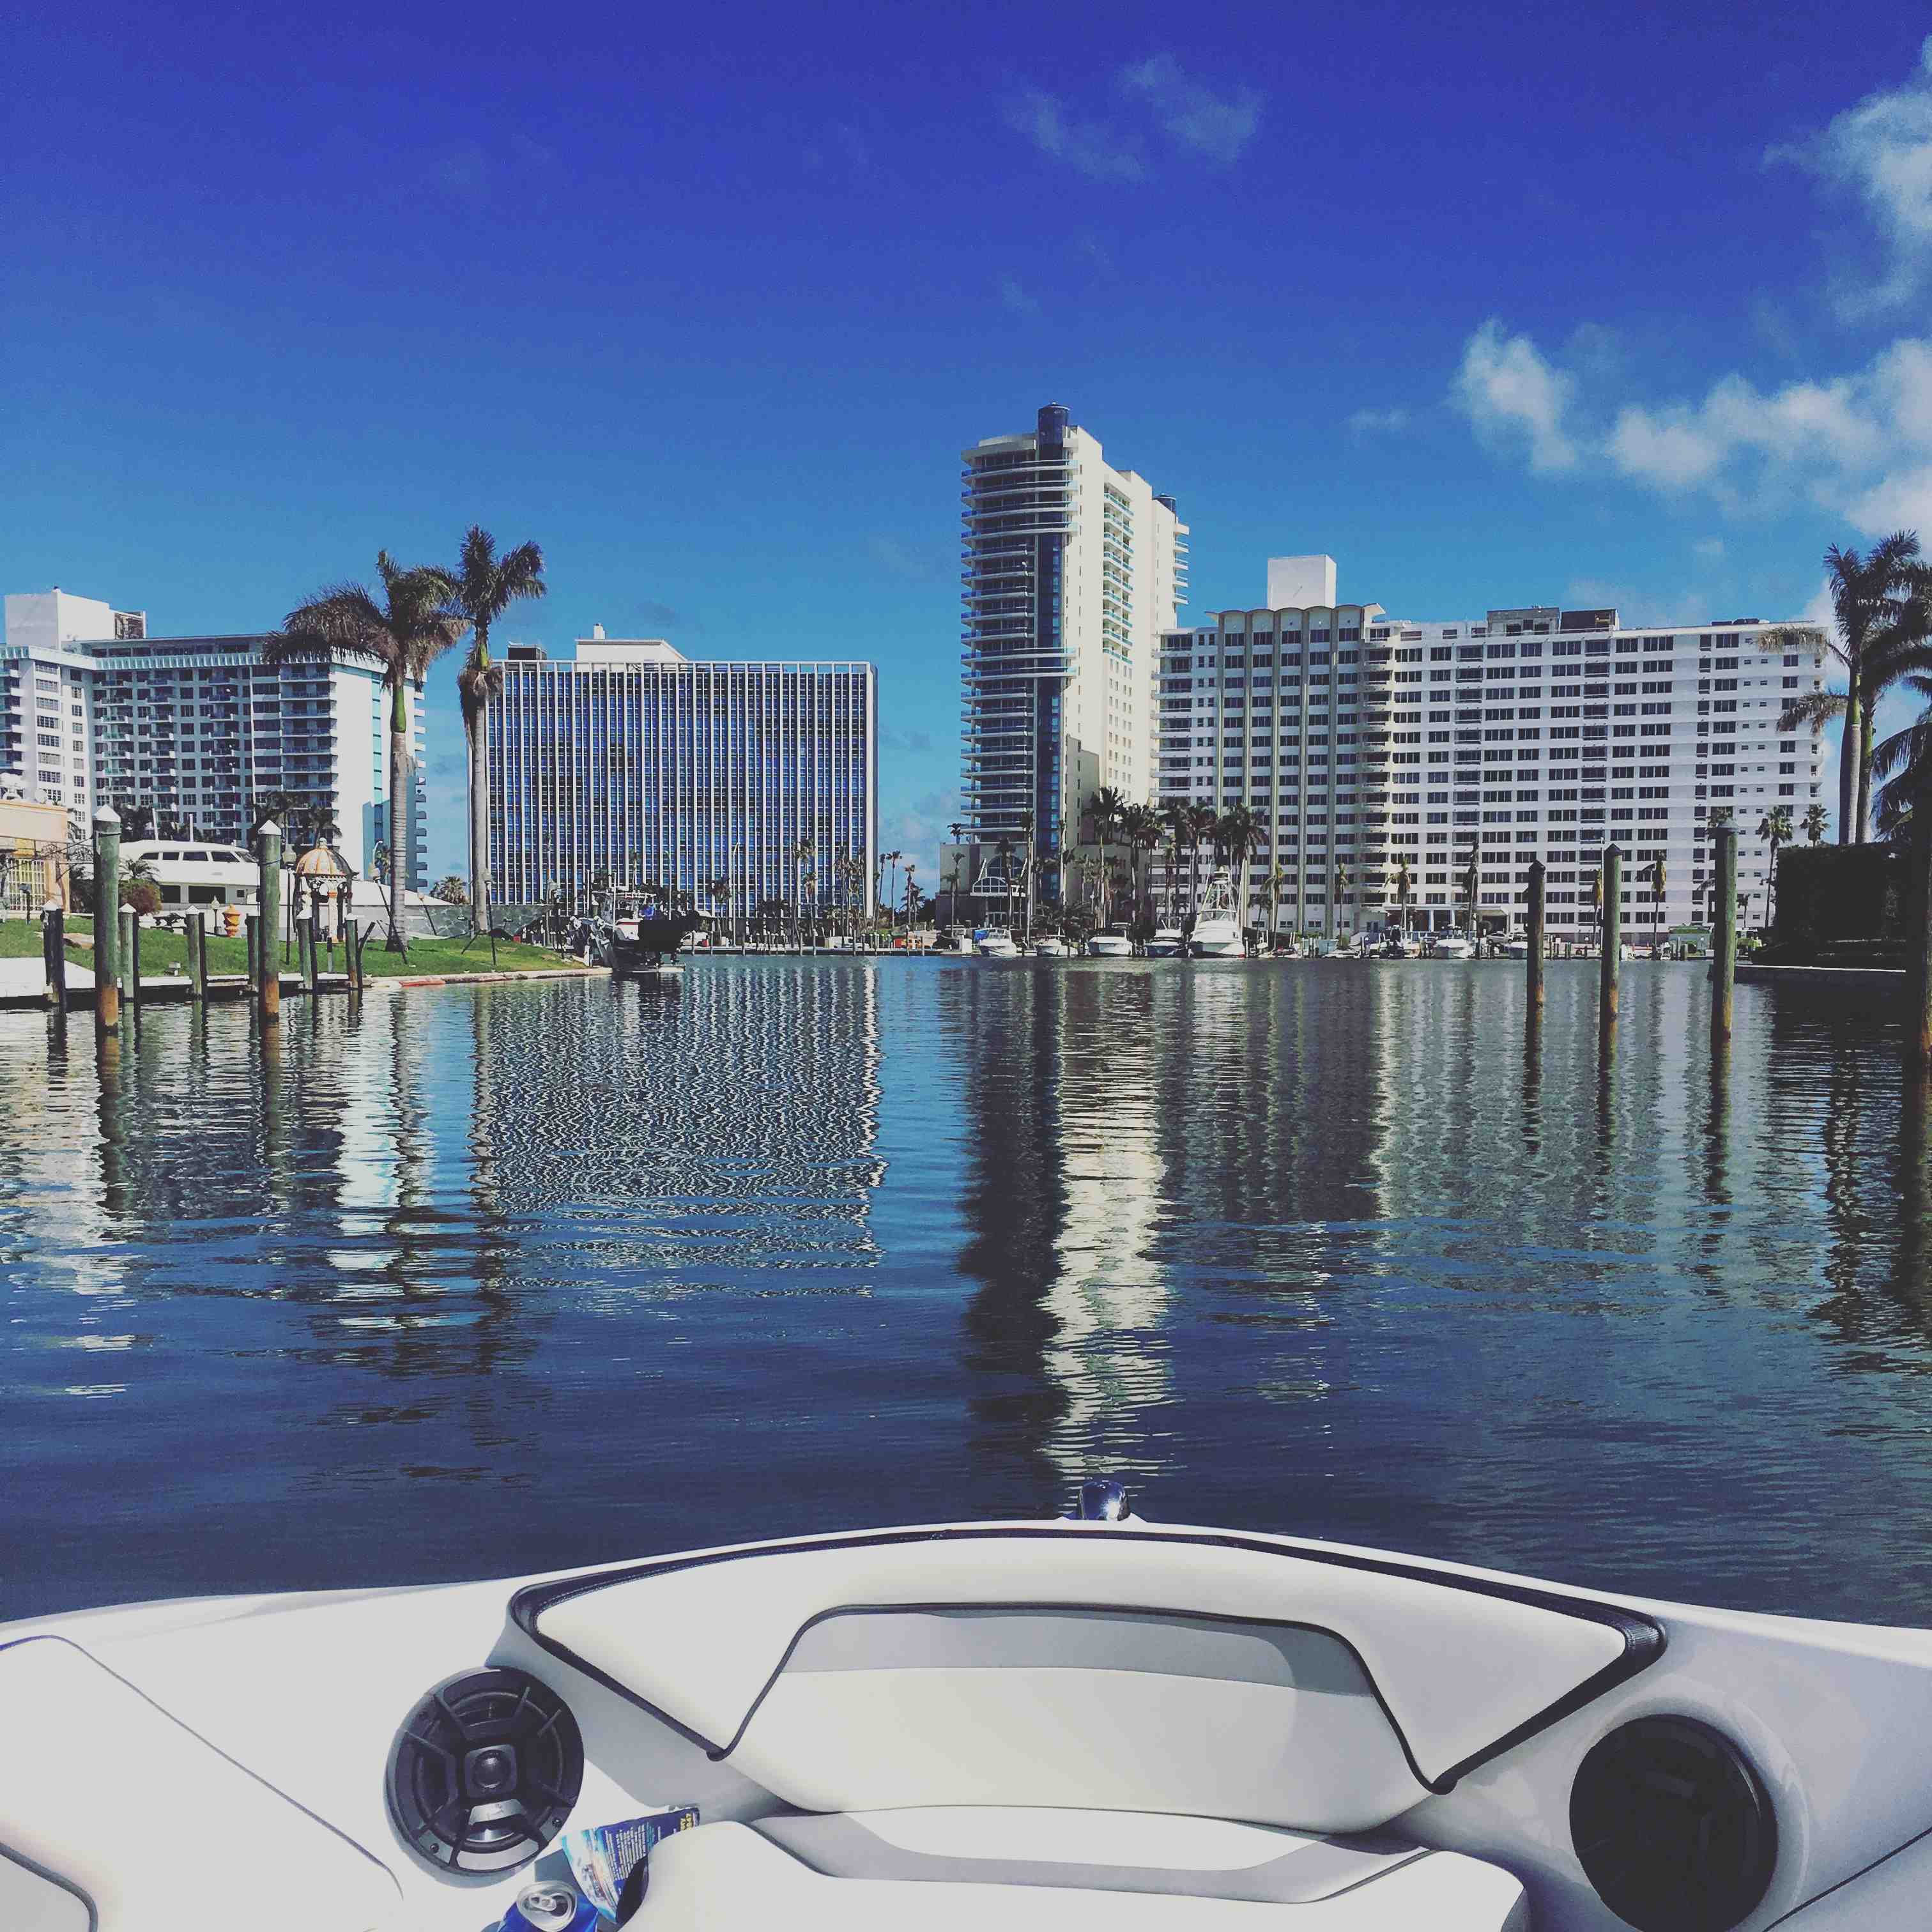  boat rentals Florida Miramar Florida  Yamaha AR195 2018 19 